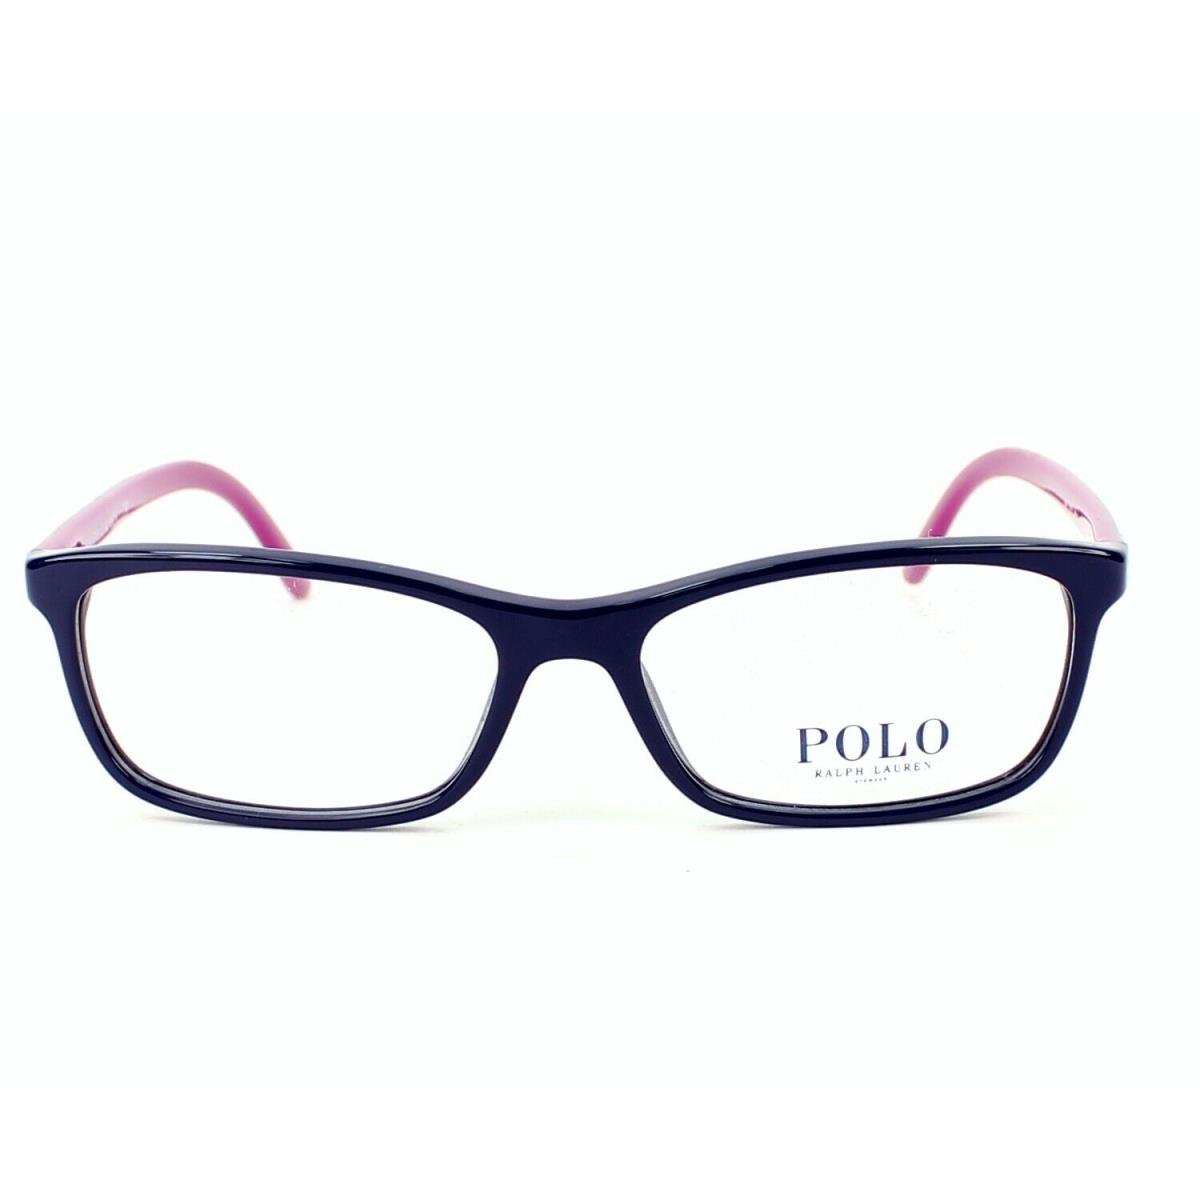 Ralph Lauren eyeglasses  - Navy , Navy Purple Frame, Clear Lens